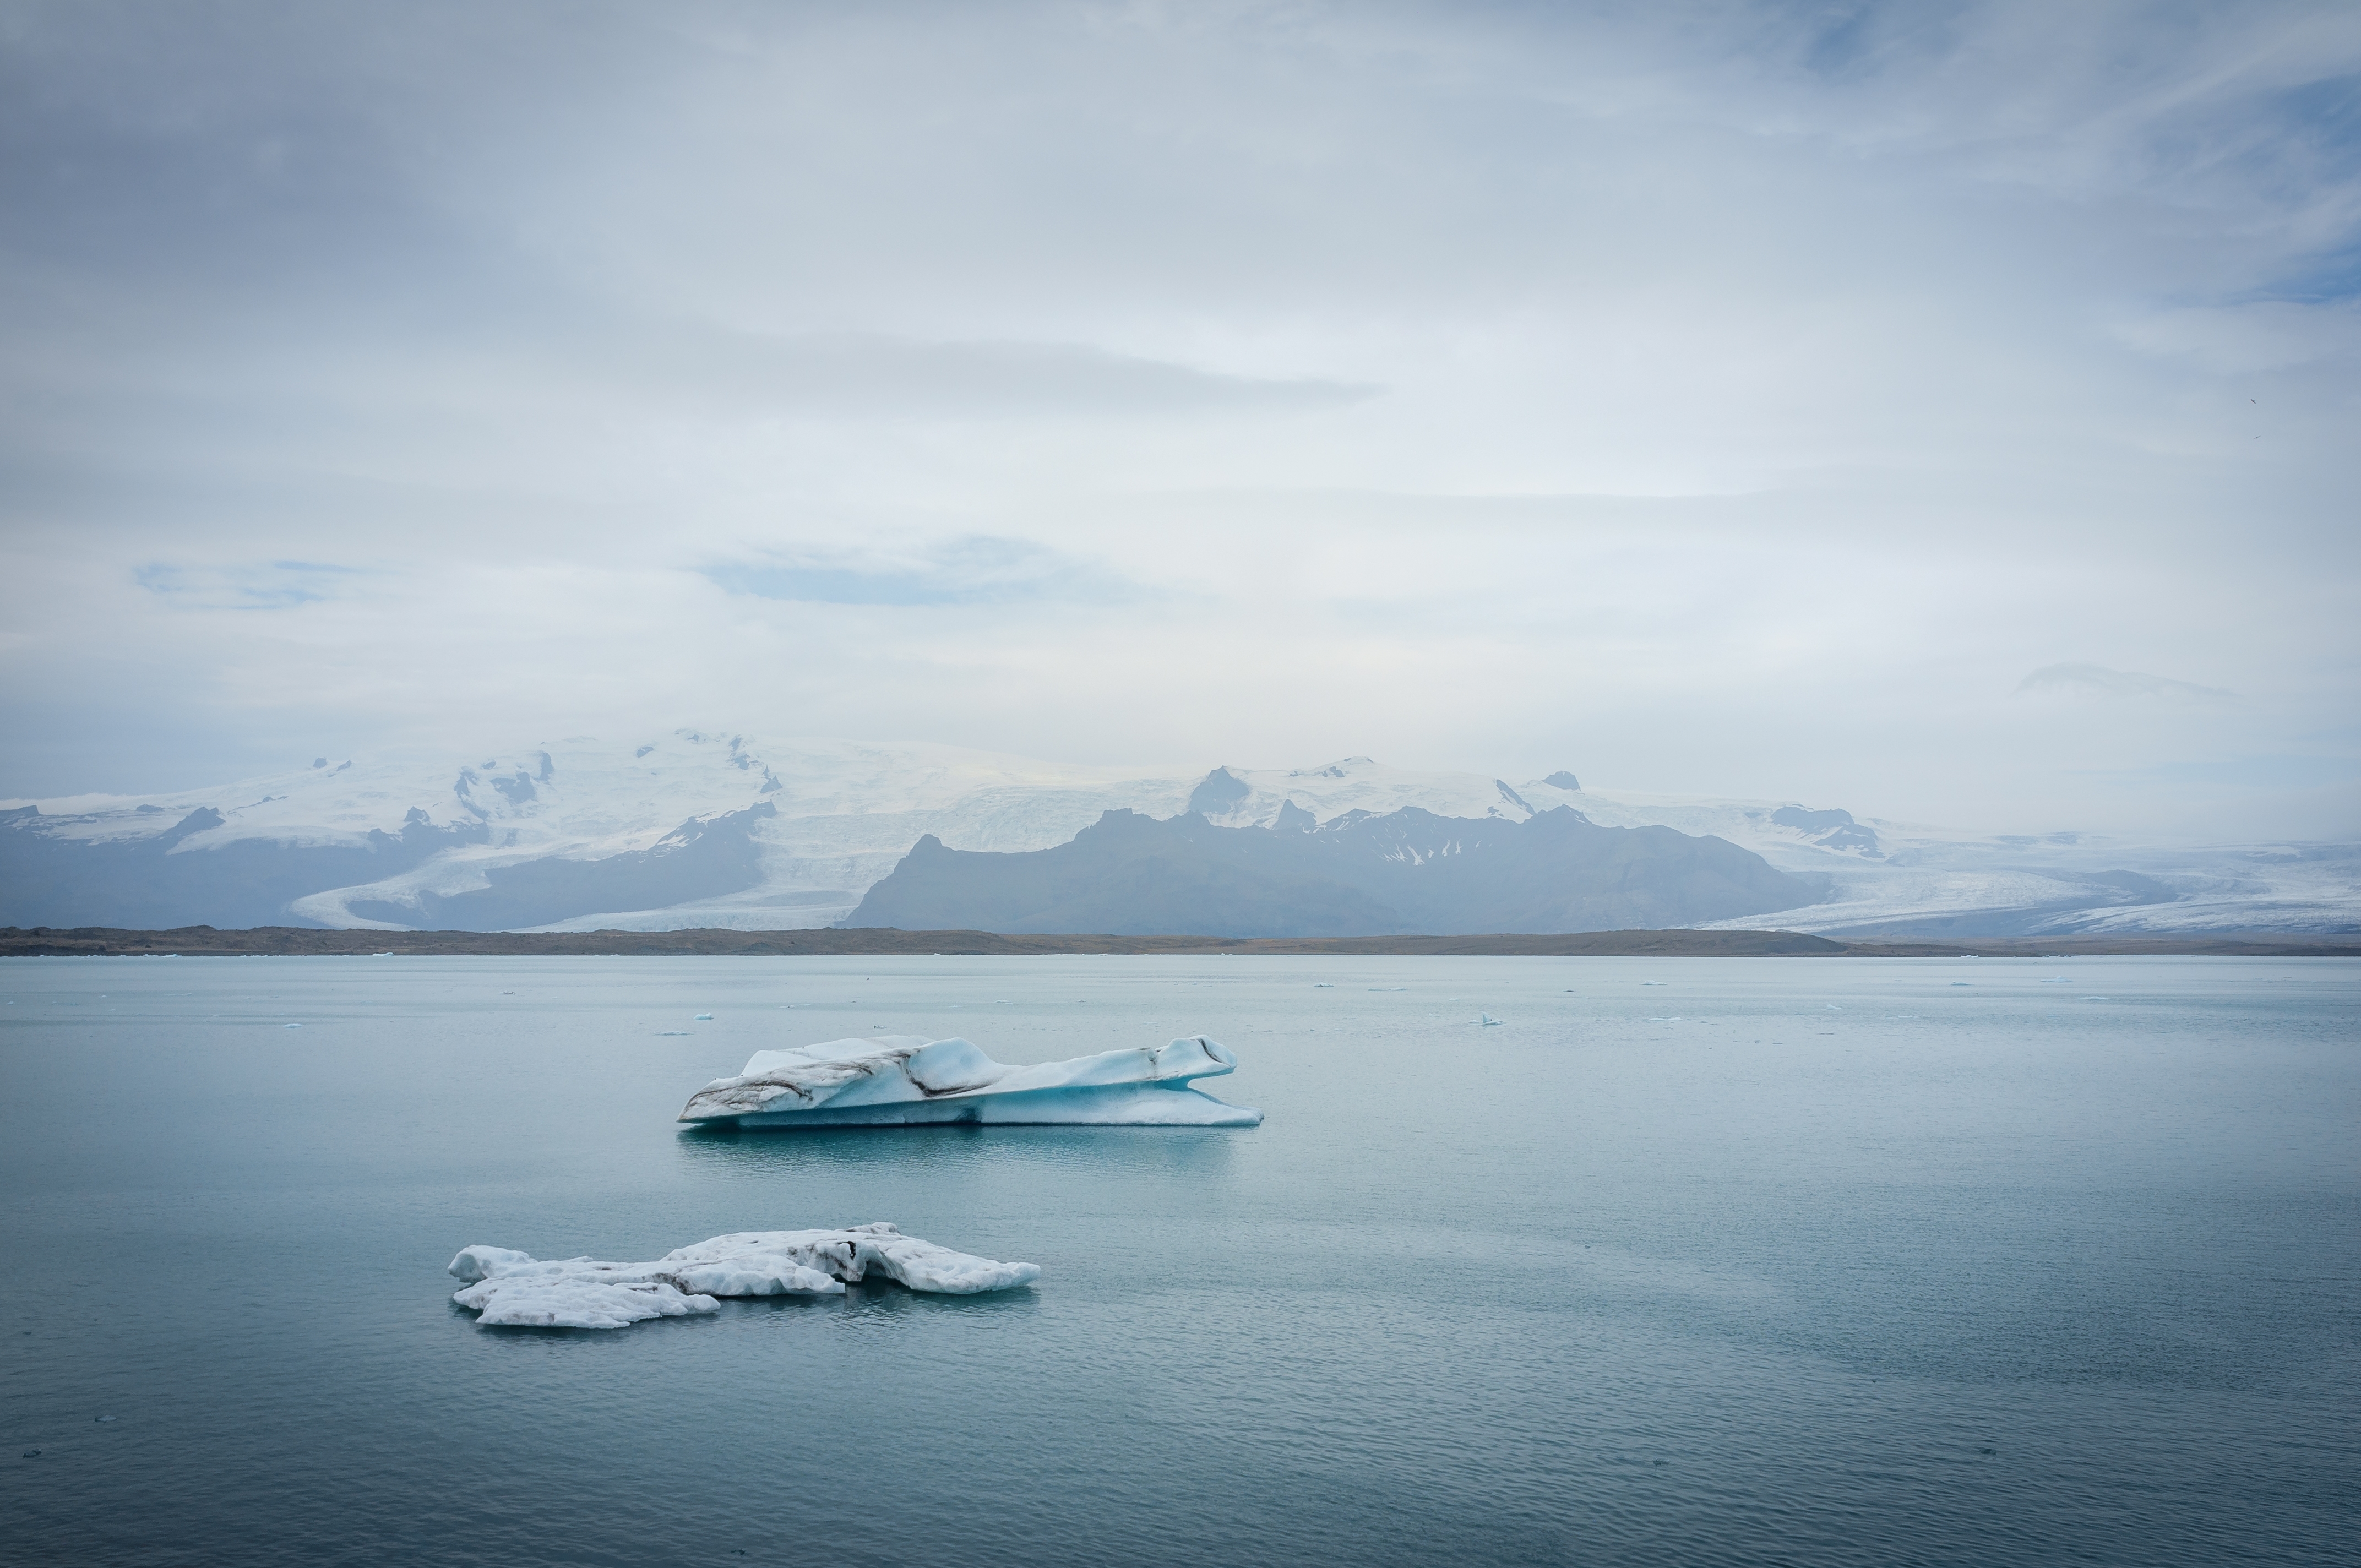 Trozos de hielo en la bahía de la laguna glaciar. | Fuente: Shutterstock